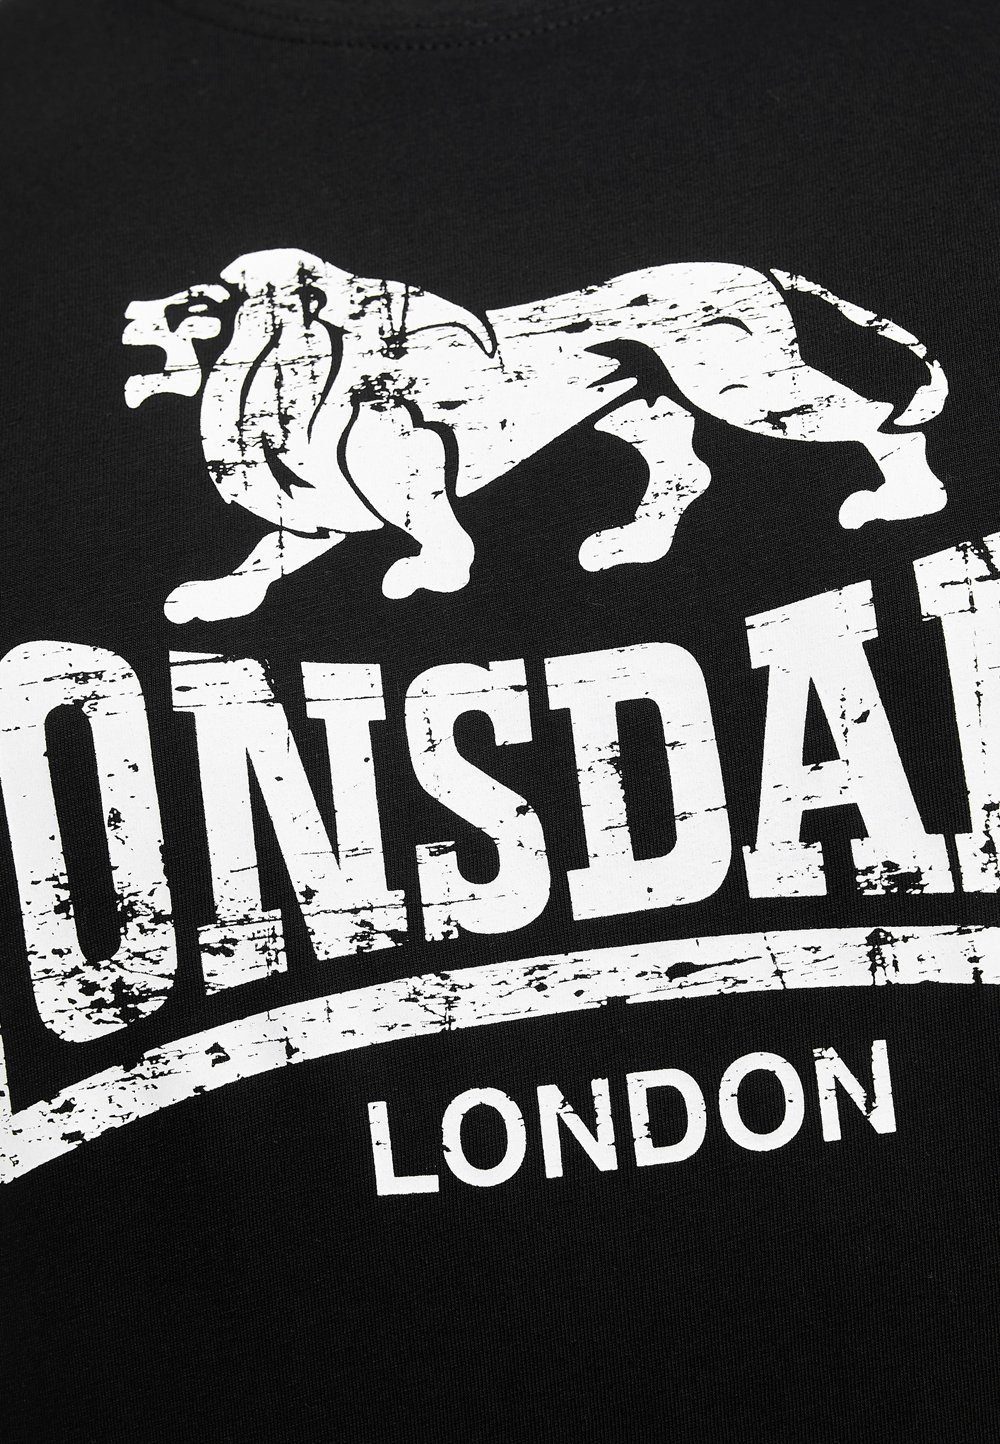 Lonsdale T-Shirt SILVERHILL Black/White